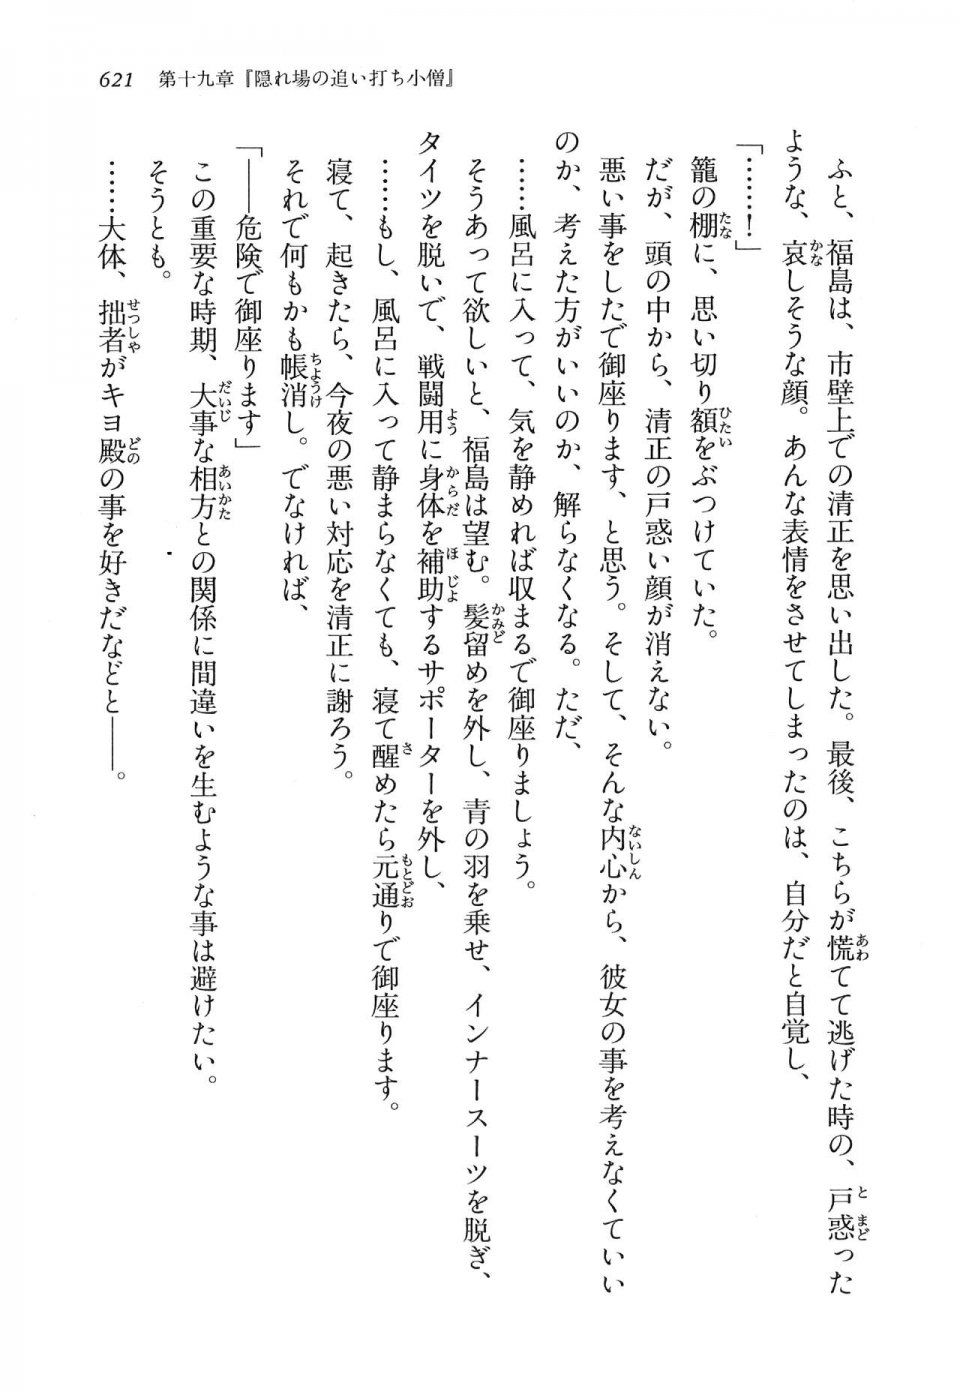 Kyoukai Senjou no Horizon LN Vol 16(7A) - Photo #621